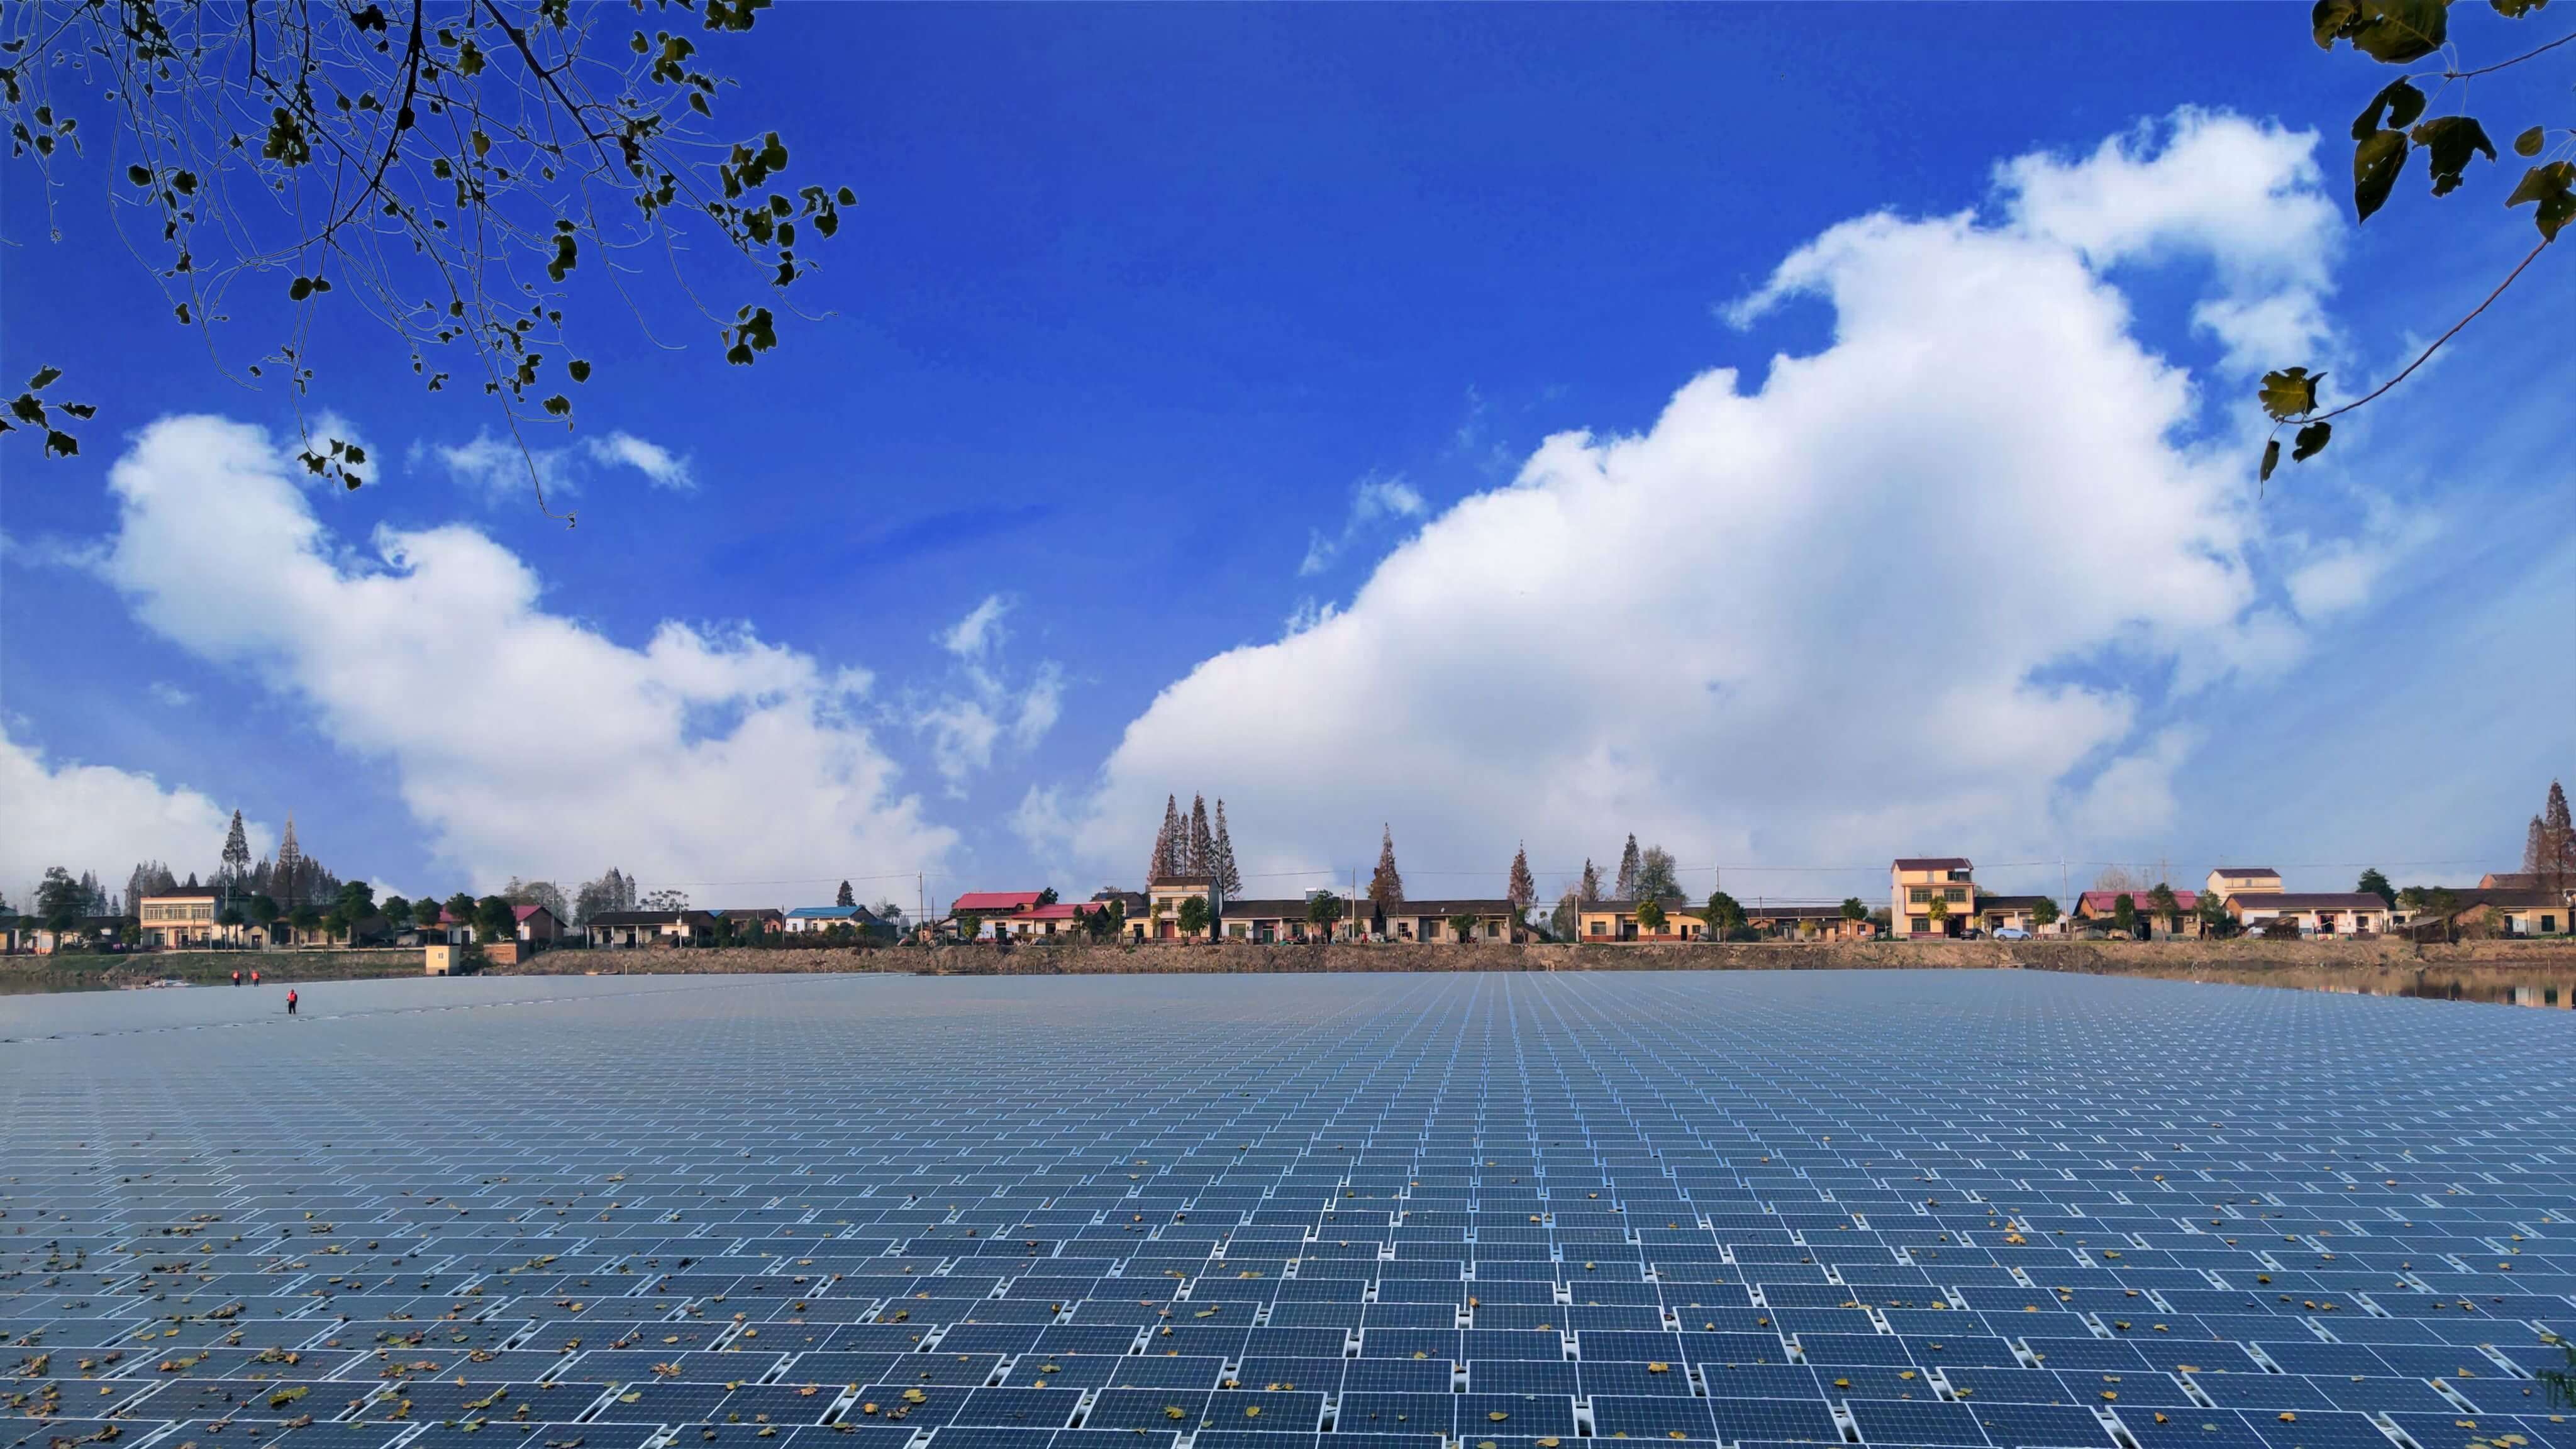 Parc solar fotovoltaic